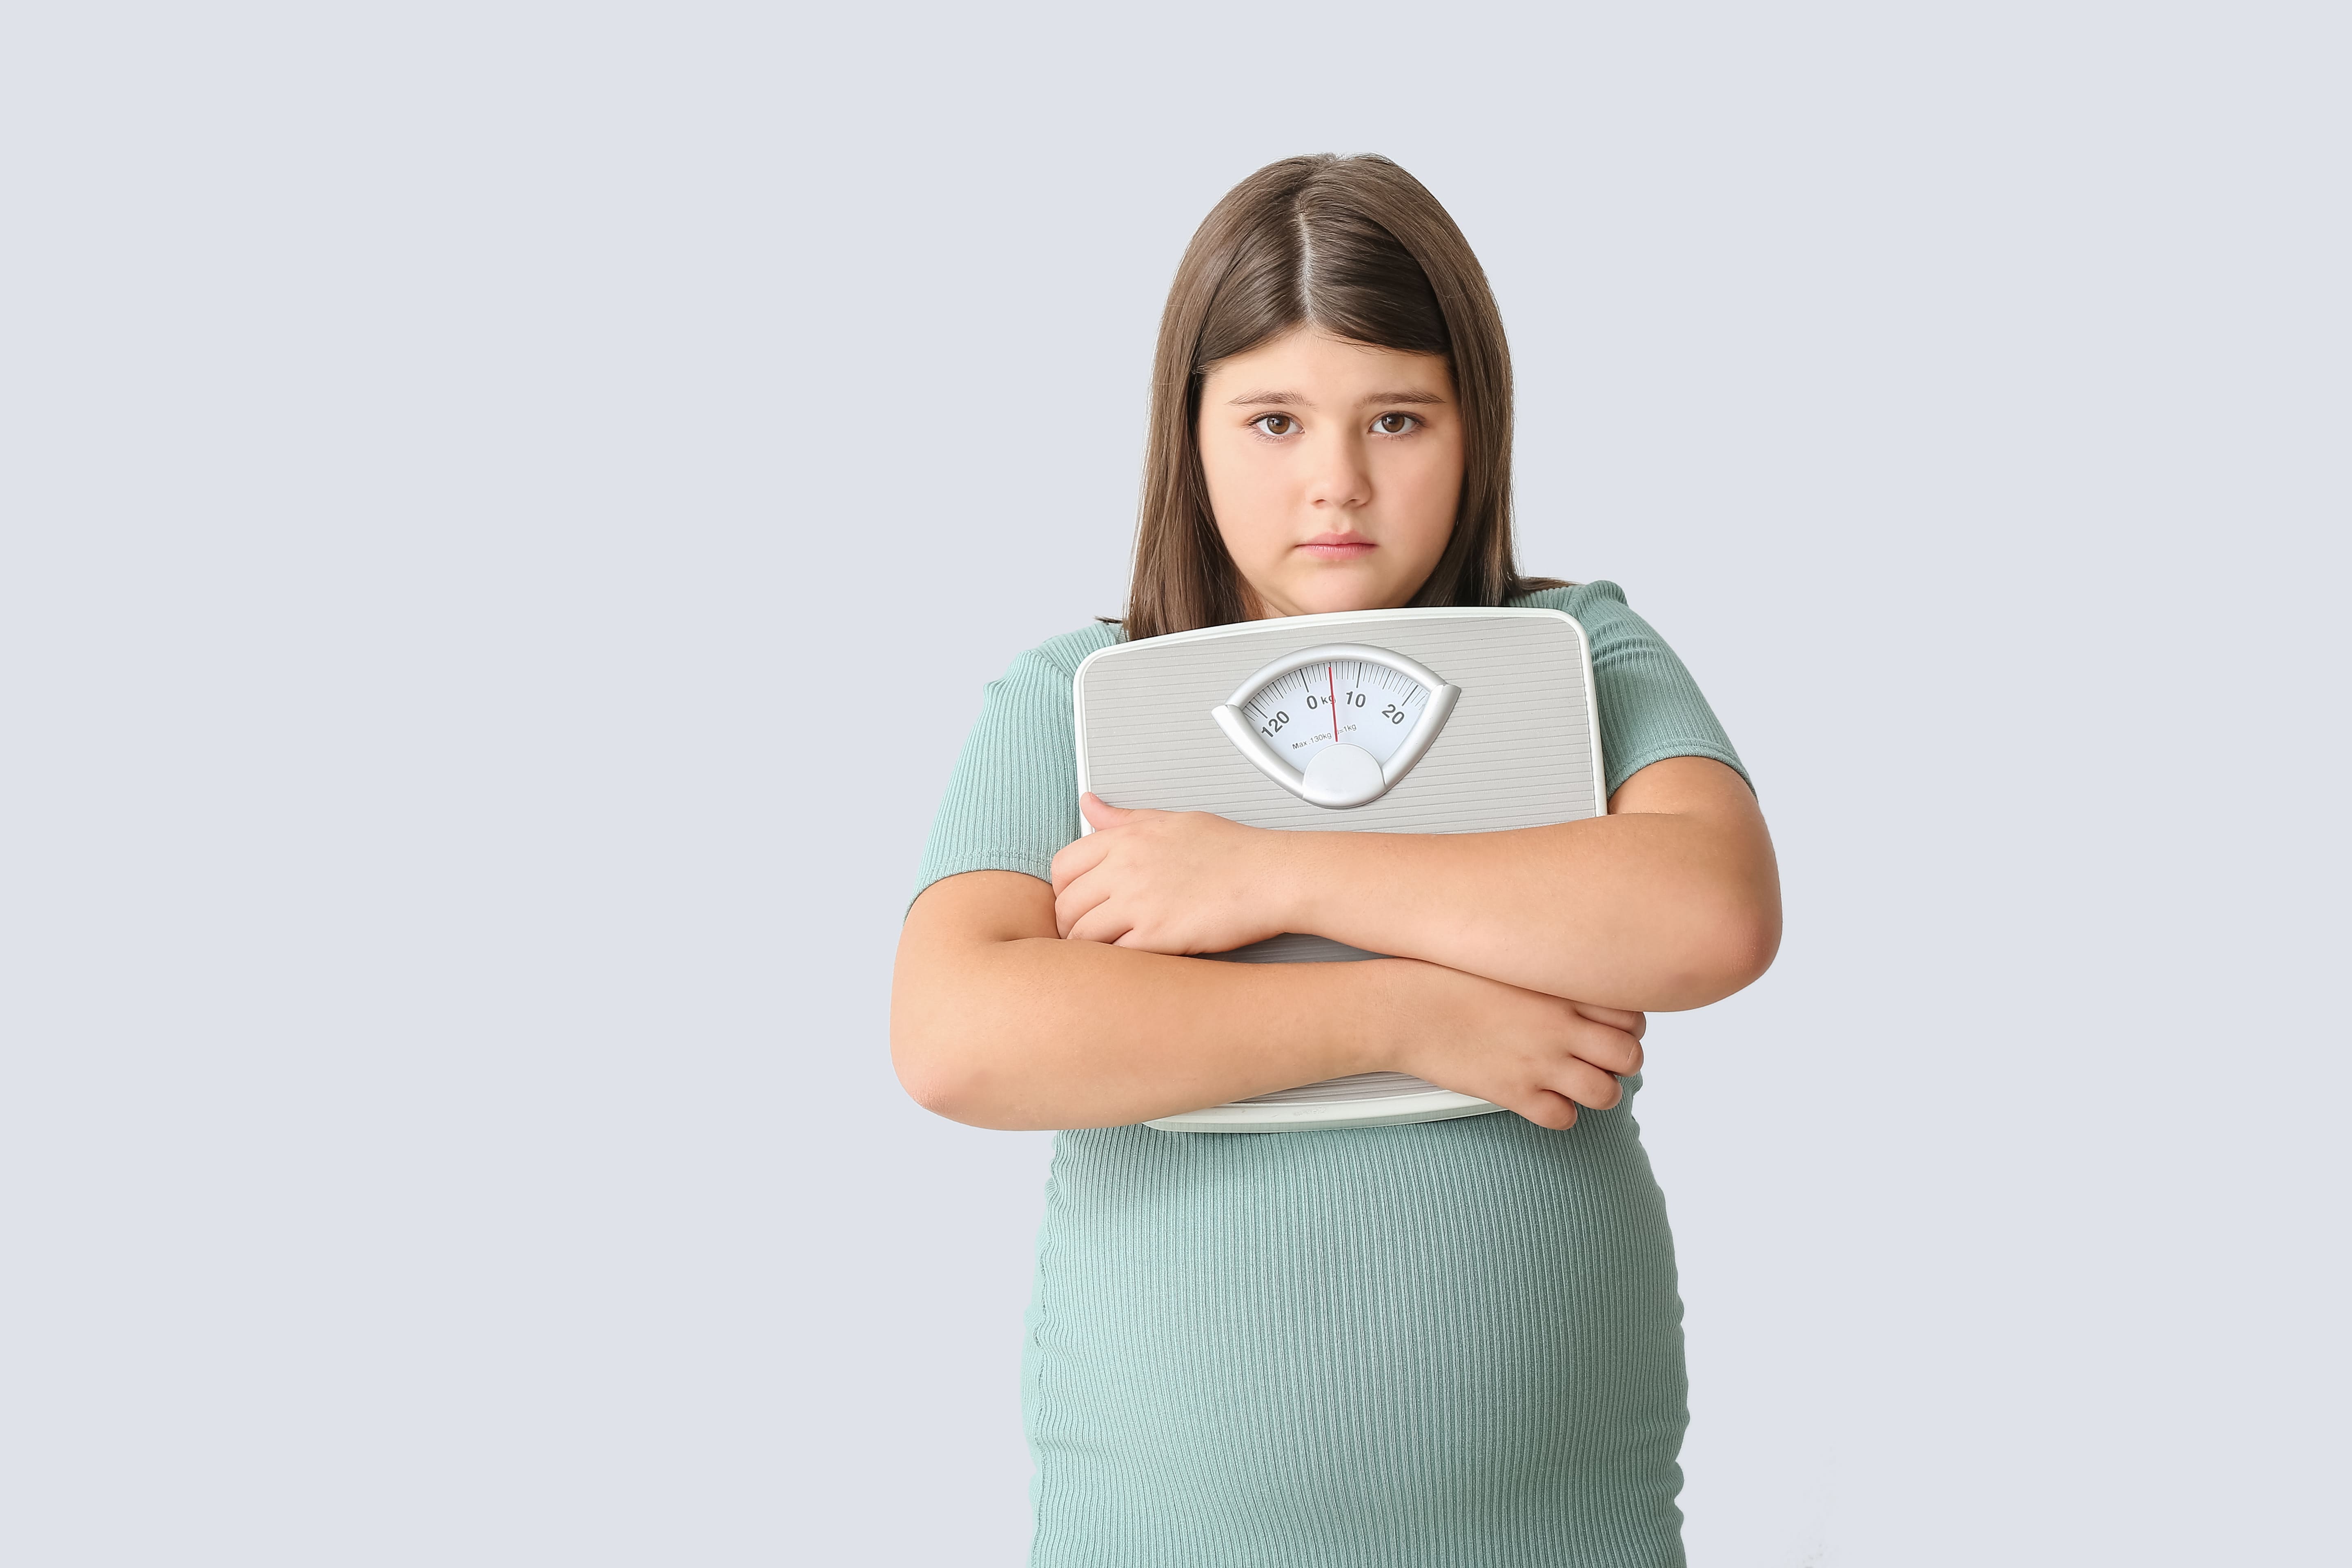 Obesidade na infância: um problema de saude pública